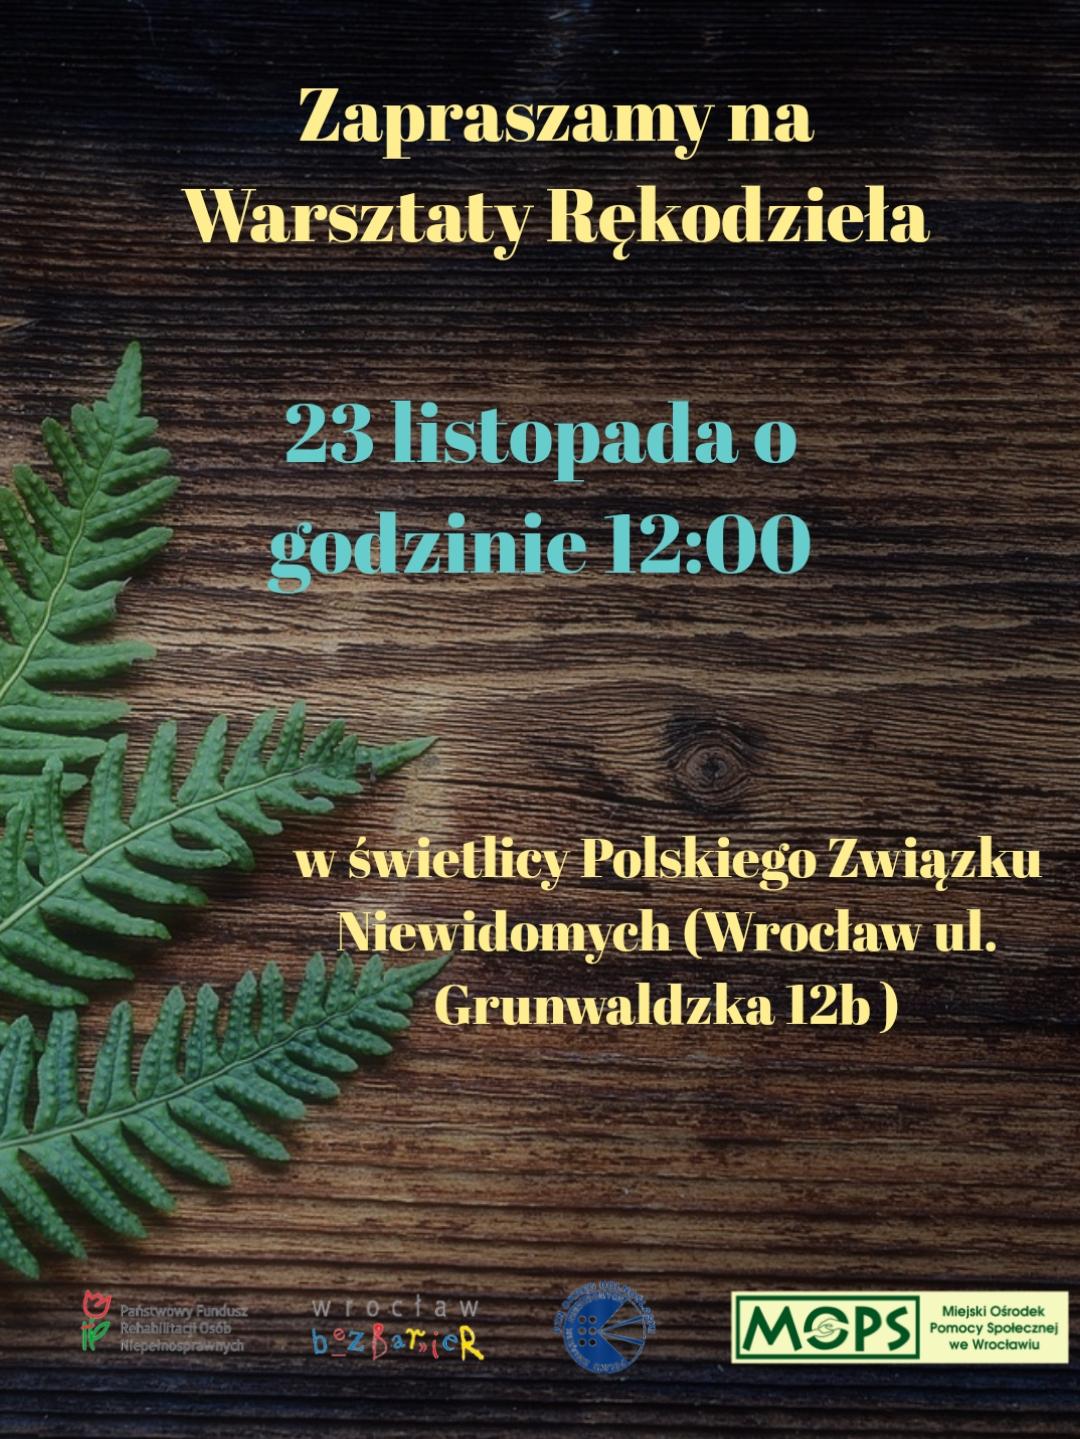 plakat, zawiera tekst: Zapraszamy na Warsztaty Rękodzieła.  23 listopada o godzinie 12:00  W świetlicy Polskiego Związku Niewidomych (Wrocław, ul. Grunwaldzka 12b).